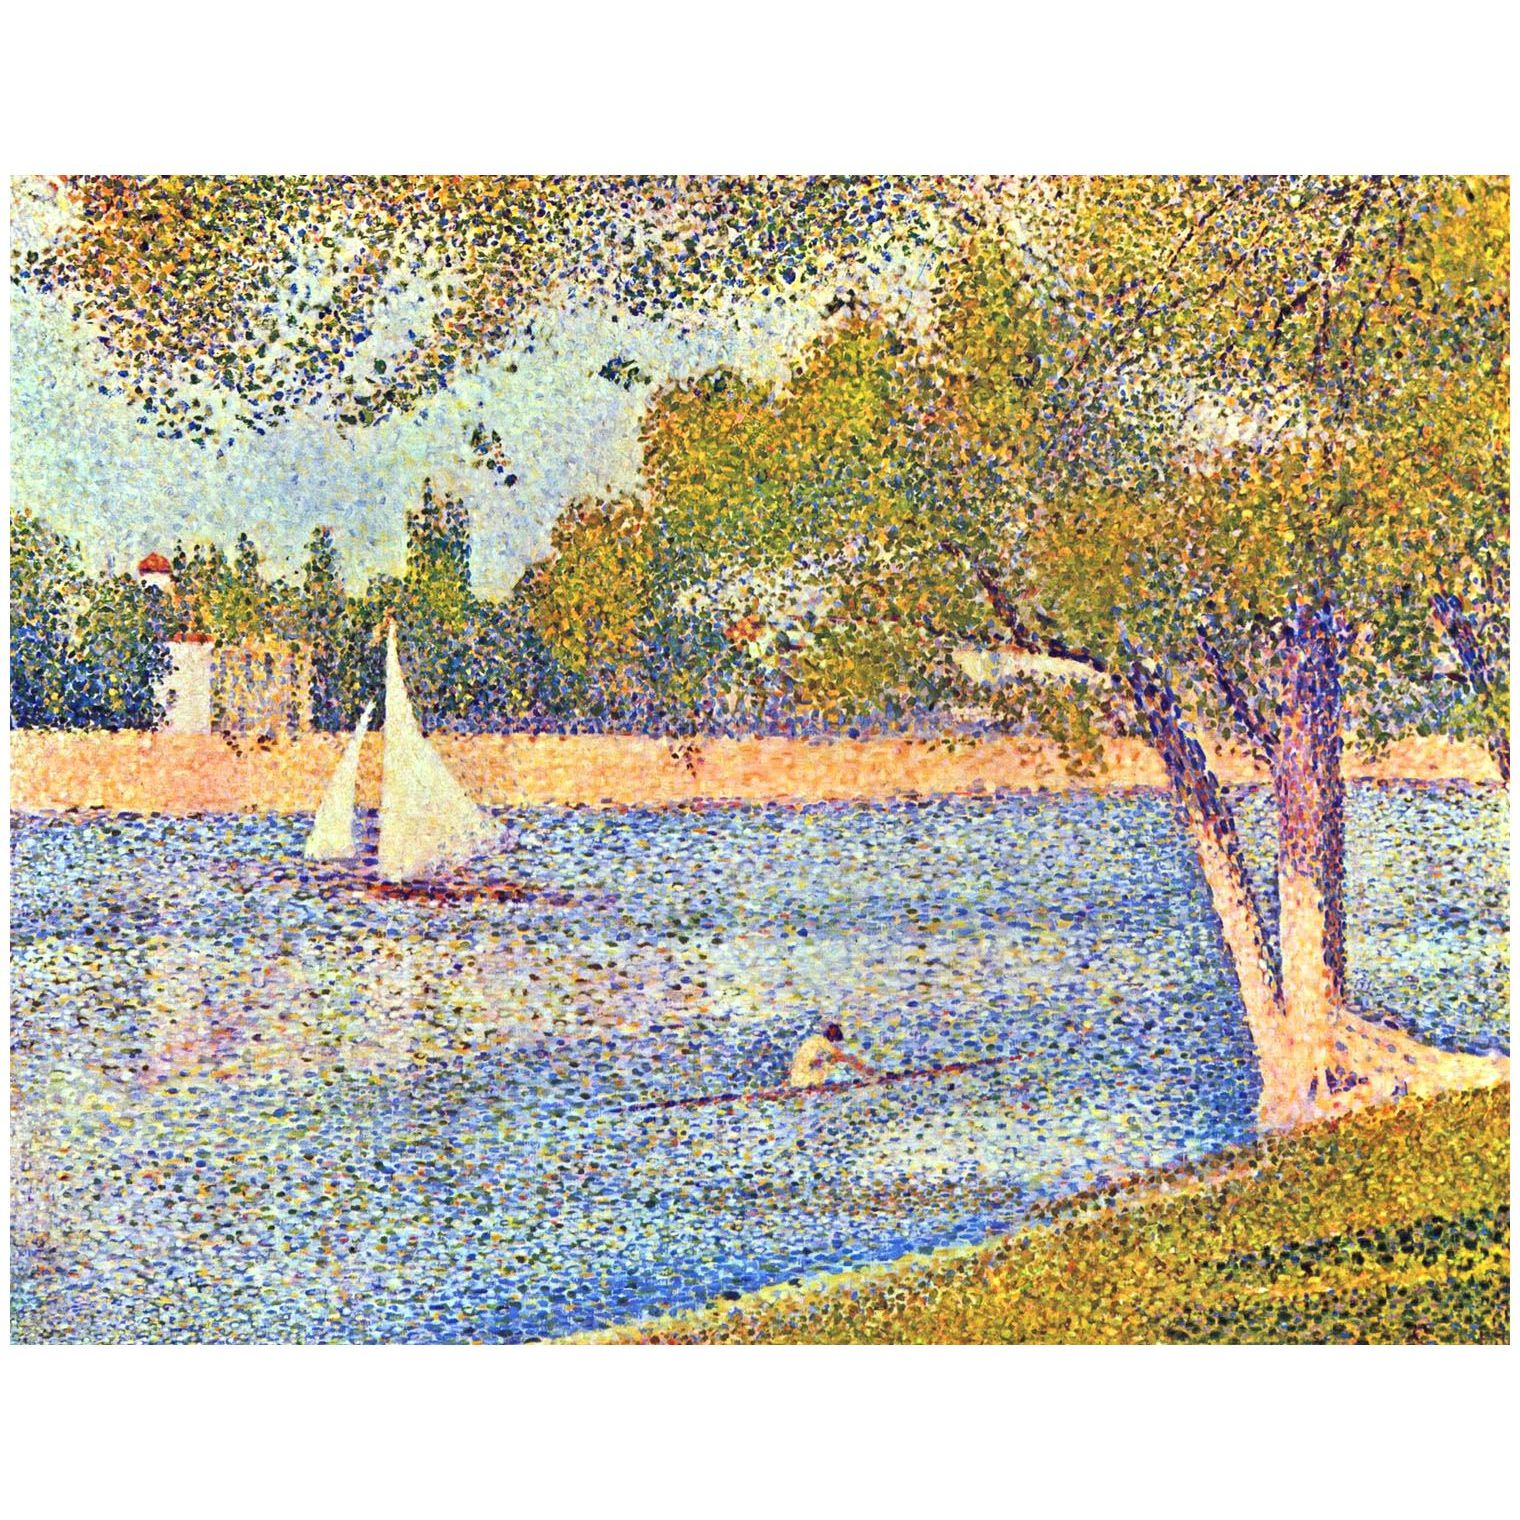 Georges Seurat. La Seine à la Grande-Jatte. 1888. Musées royaux, Brussels